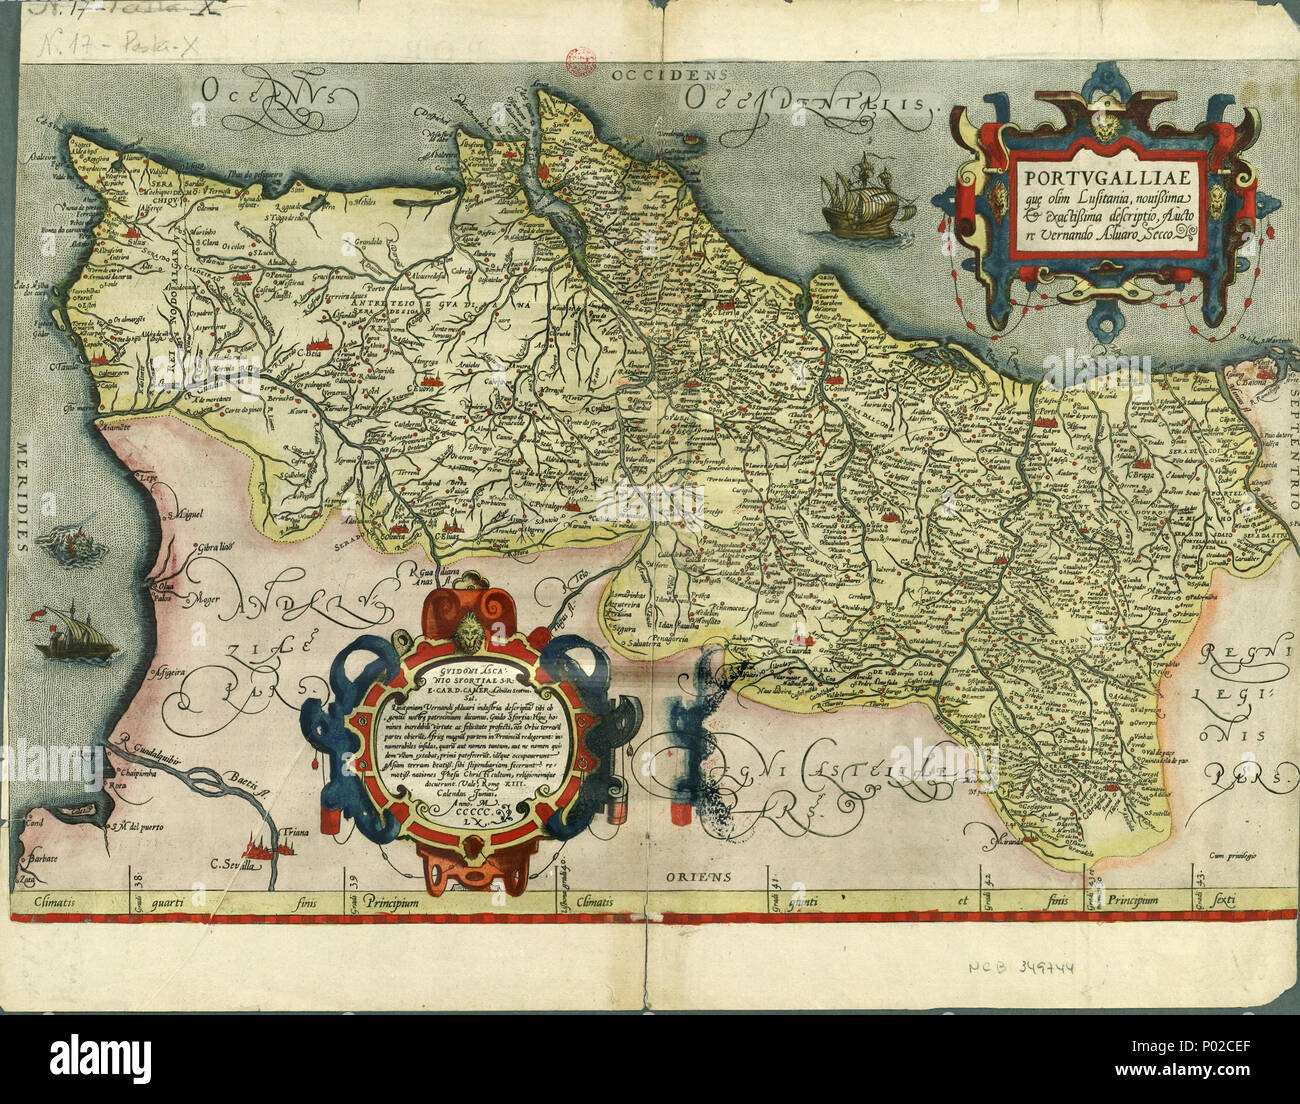 . Português: Portugalliae que olim Lusitania . 1561. Fernando Alvares Seco; Abraham Ortelius 20 Cc-400-v 1 t24-C-R0150 Foto Stock